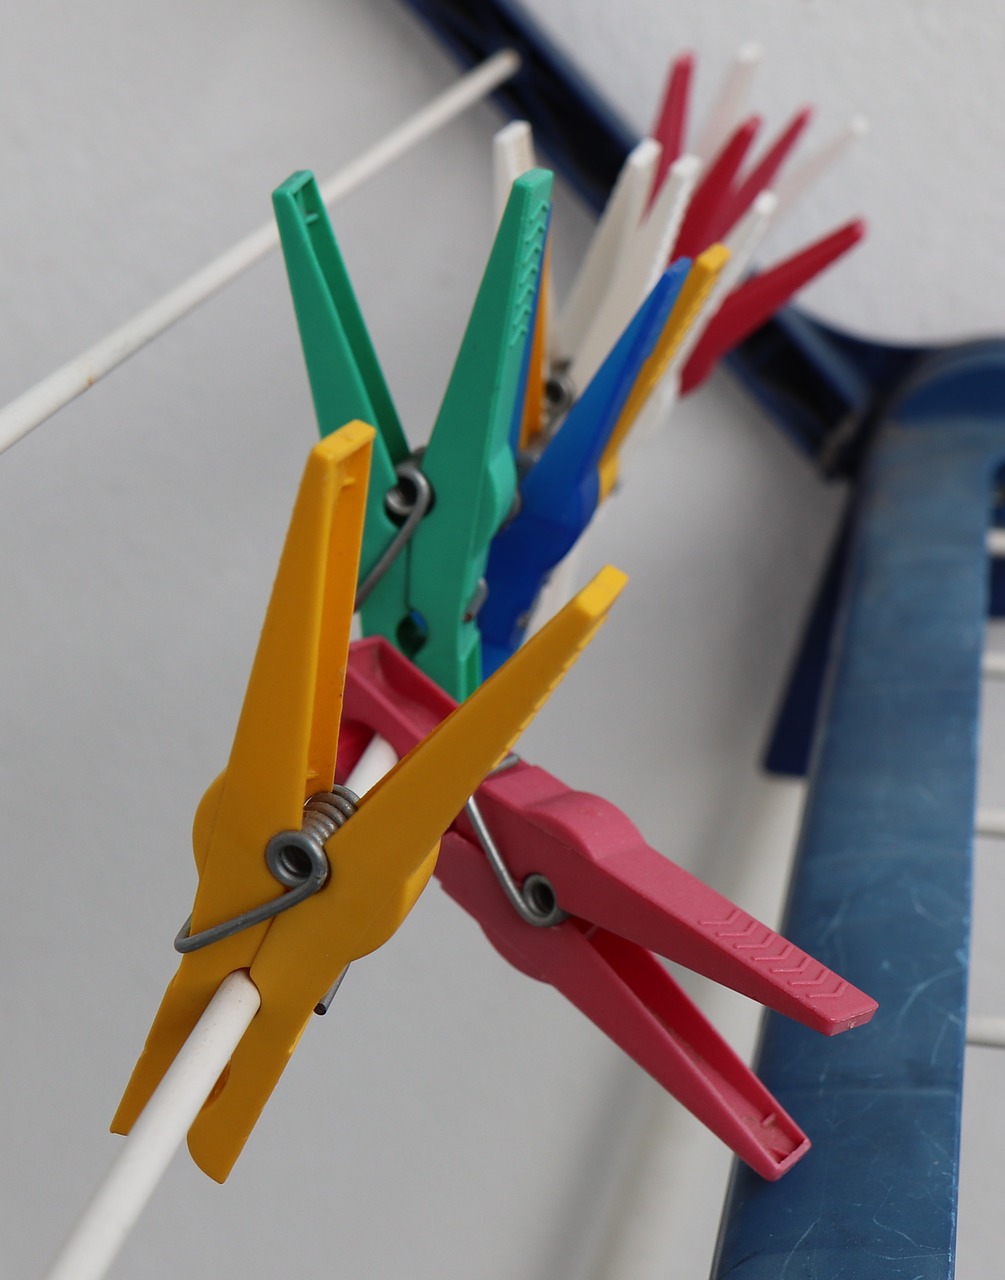 klämmerchen  clamp  clothespins free photo